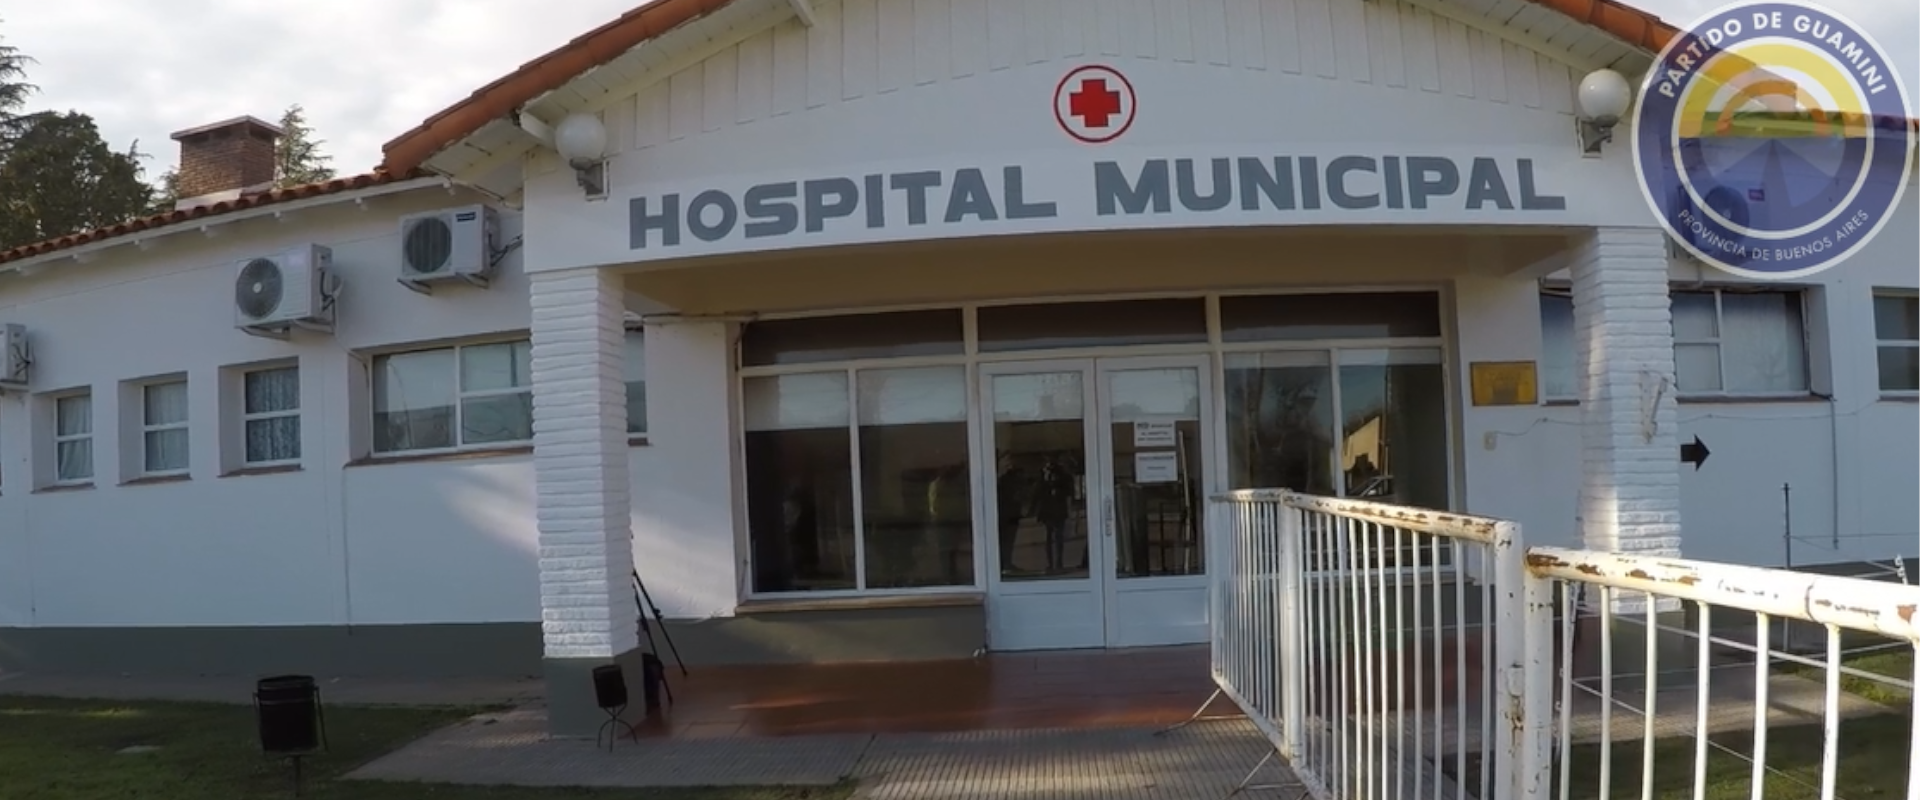 Cómo funciona la recepción de pacientes que acuden al Hospital Municipal de Casbas